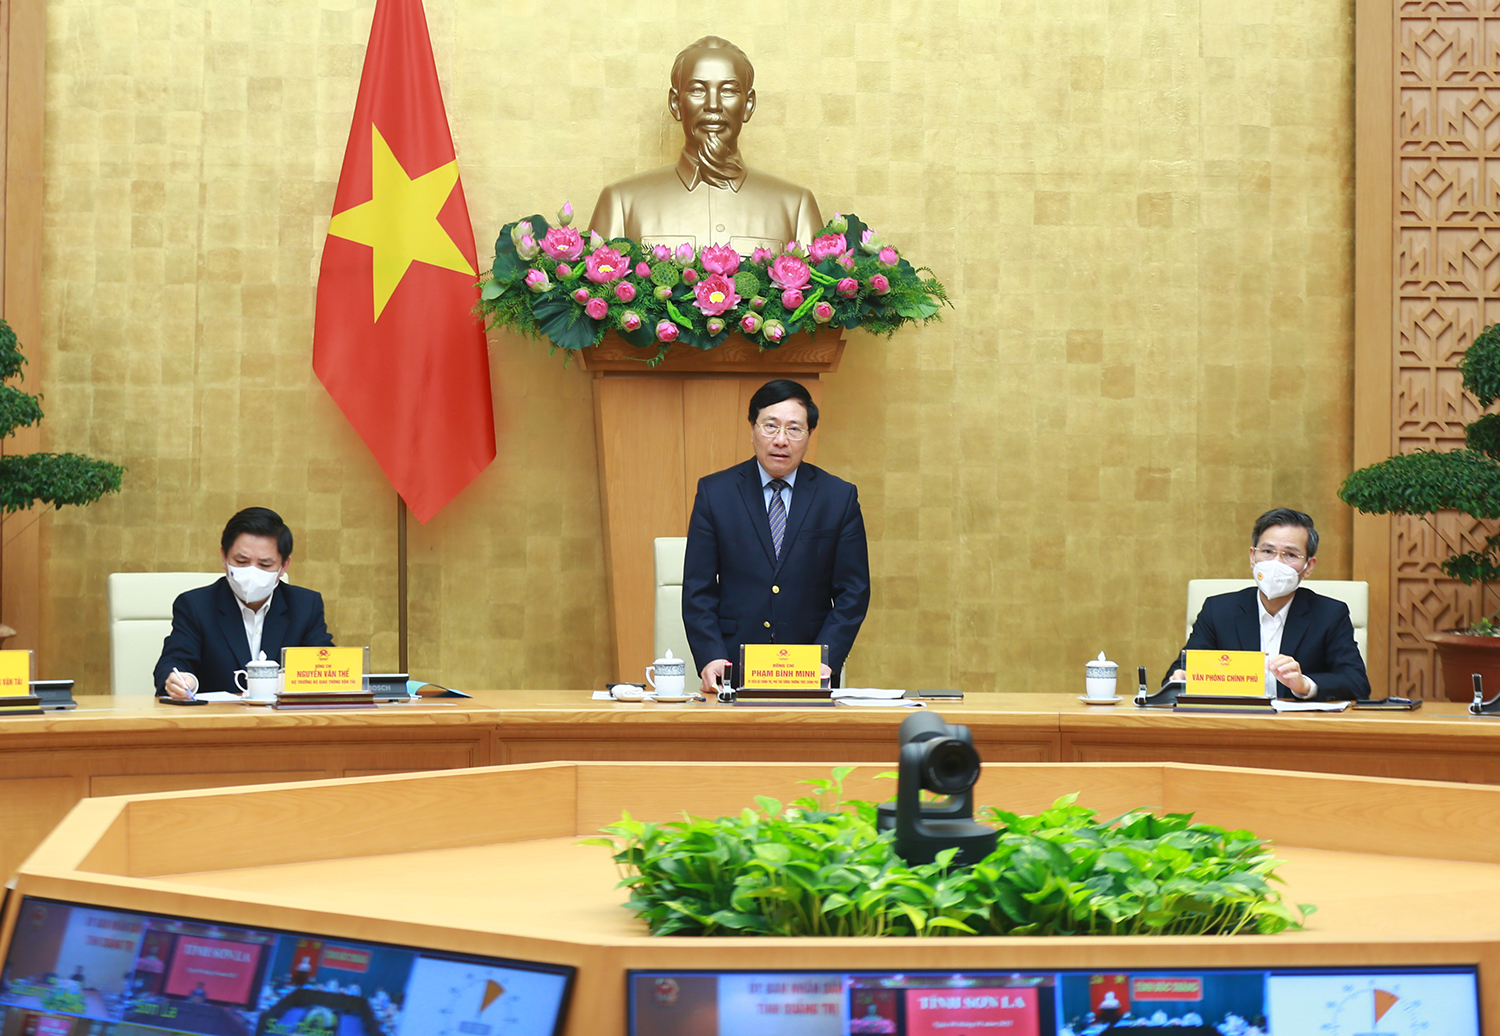 Phó Thủ tướng Phạm Bình Minh chủ trì Hội nghị trực tuyến toàn quốc tổng kết công tác bảo đảm trật tự, ATGT năm 2021, bàn phương hướng, nhiệm vụ năm 2022. Ảnh: VGP/Hải Minh